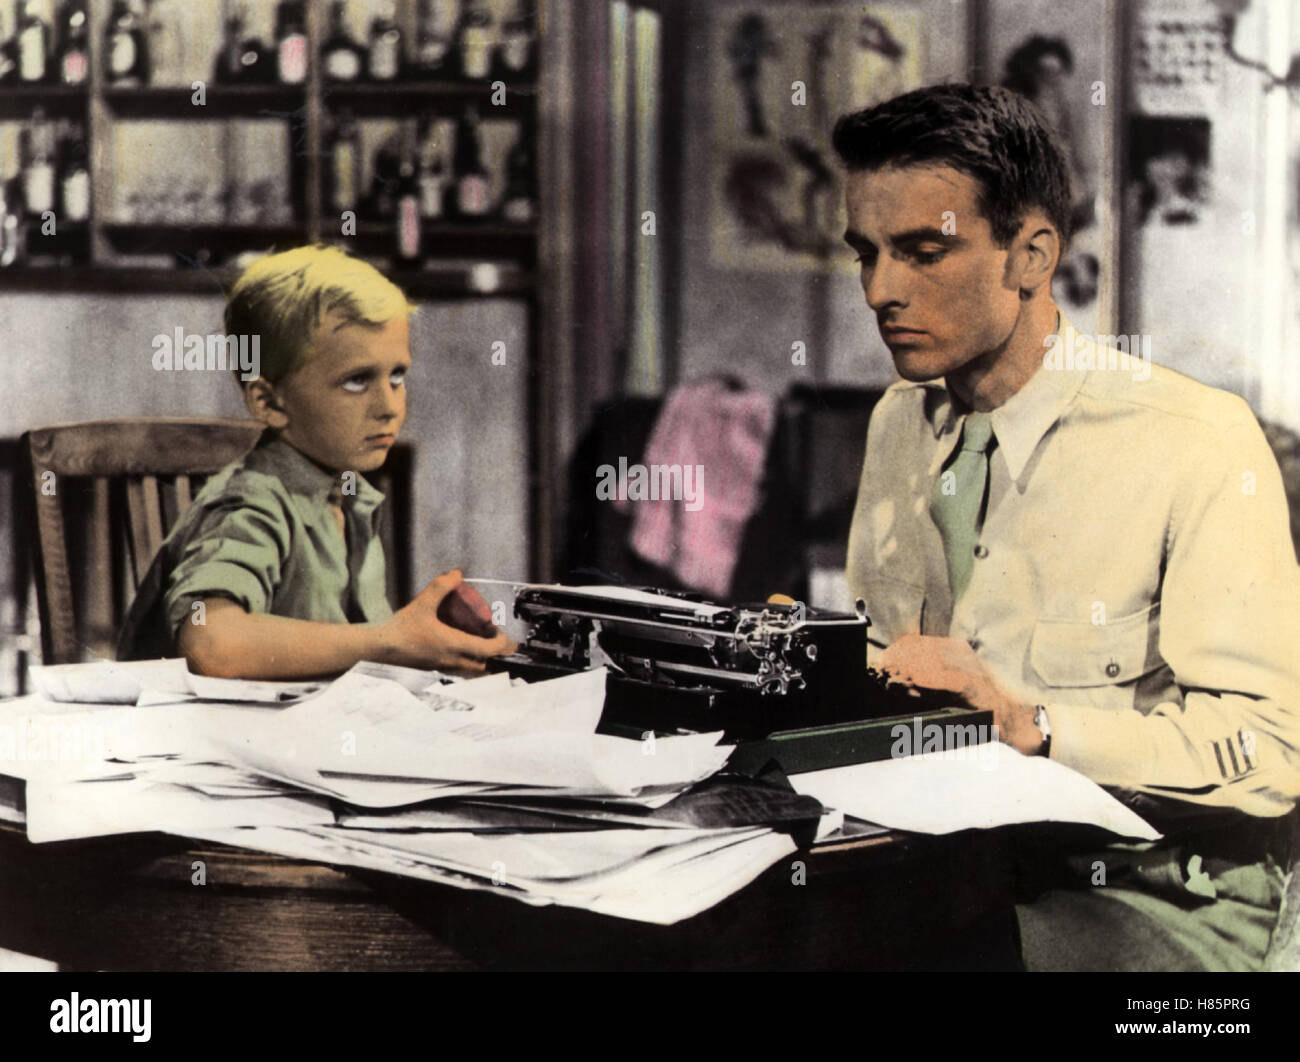 Die Gezeichneten, (la ricerca) USA 1948, Regie: Fred Zinnemann, IVAN JANDL, MONTGOMERY CLIFT, Stichwort: Schreibmaschine Foto Stock